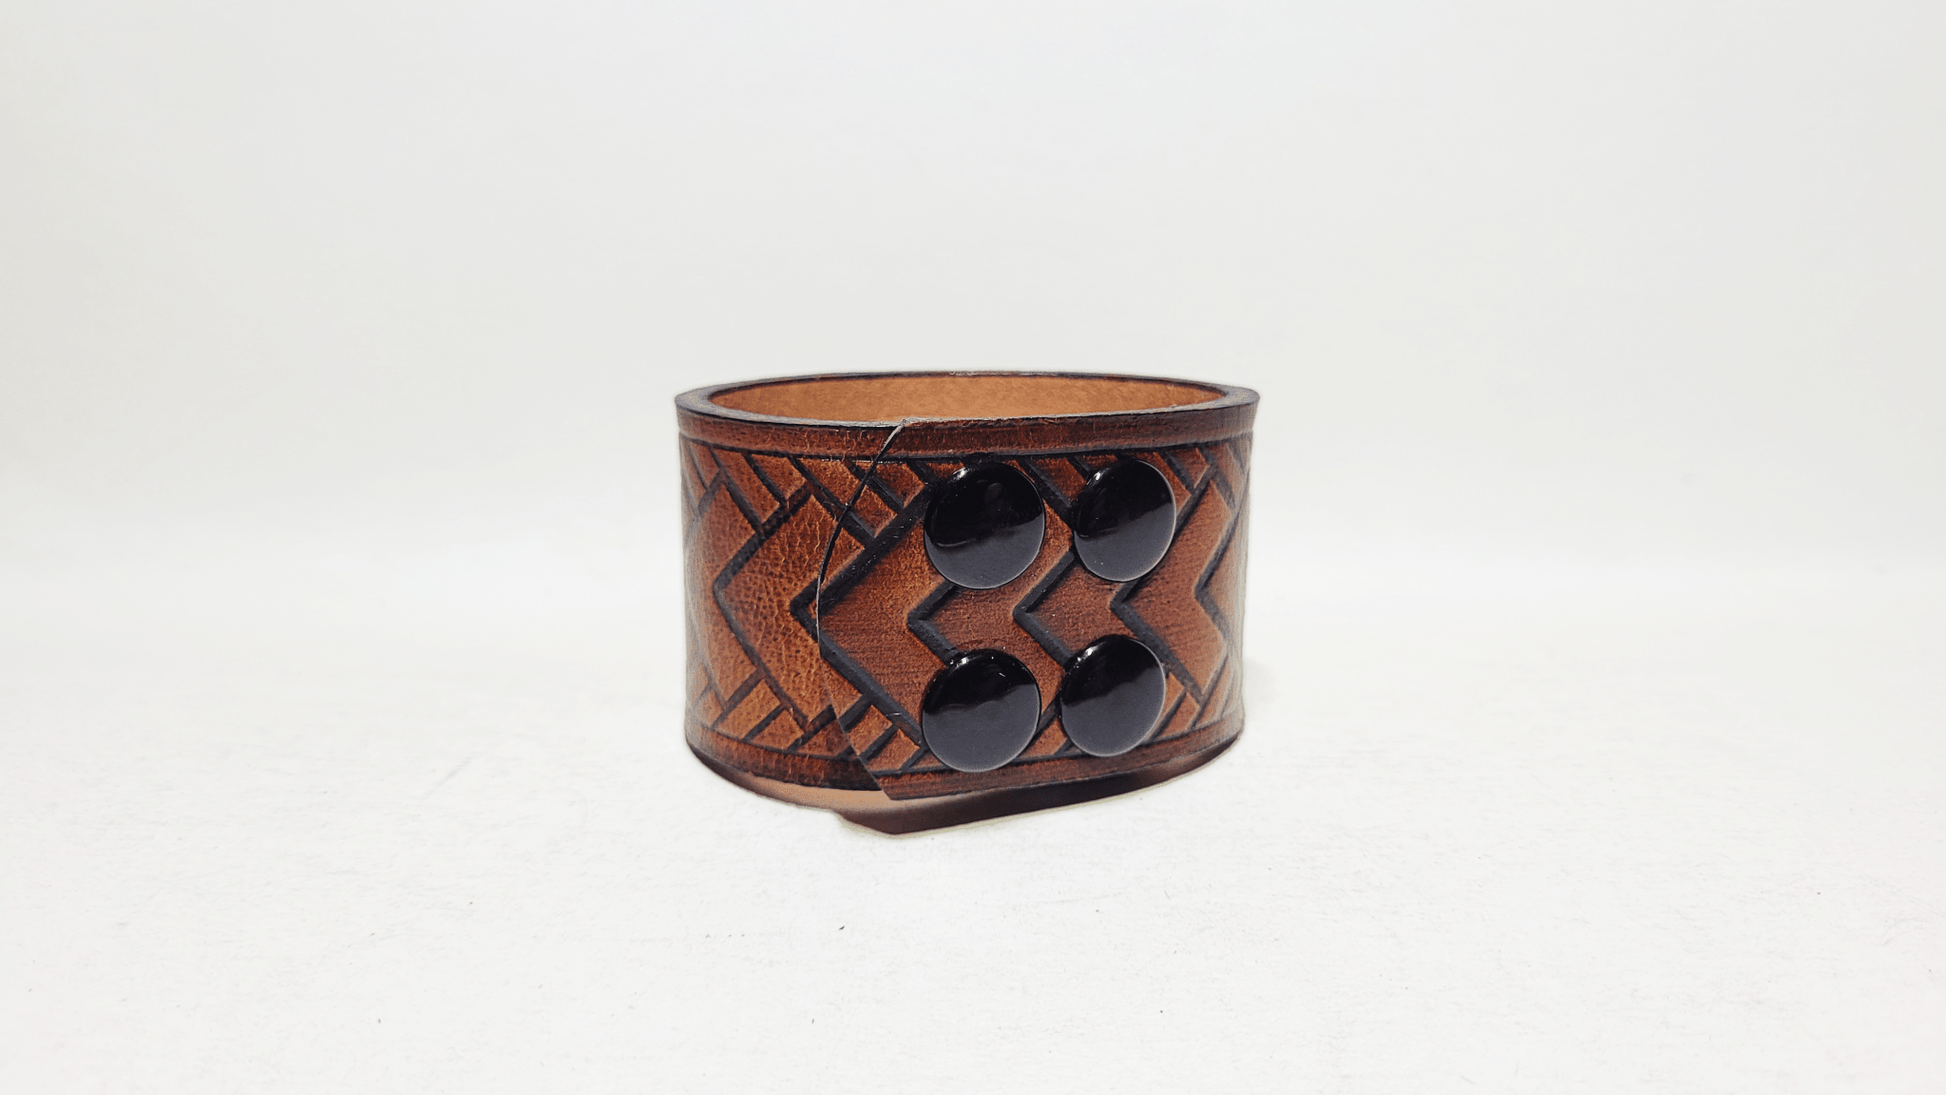 Handmade Embossed Leather Bracelet - Buffalo Artisanal - B-254